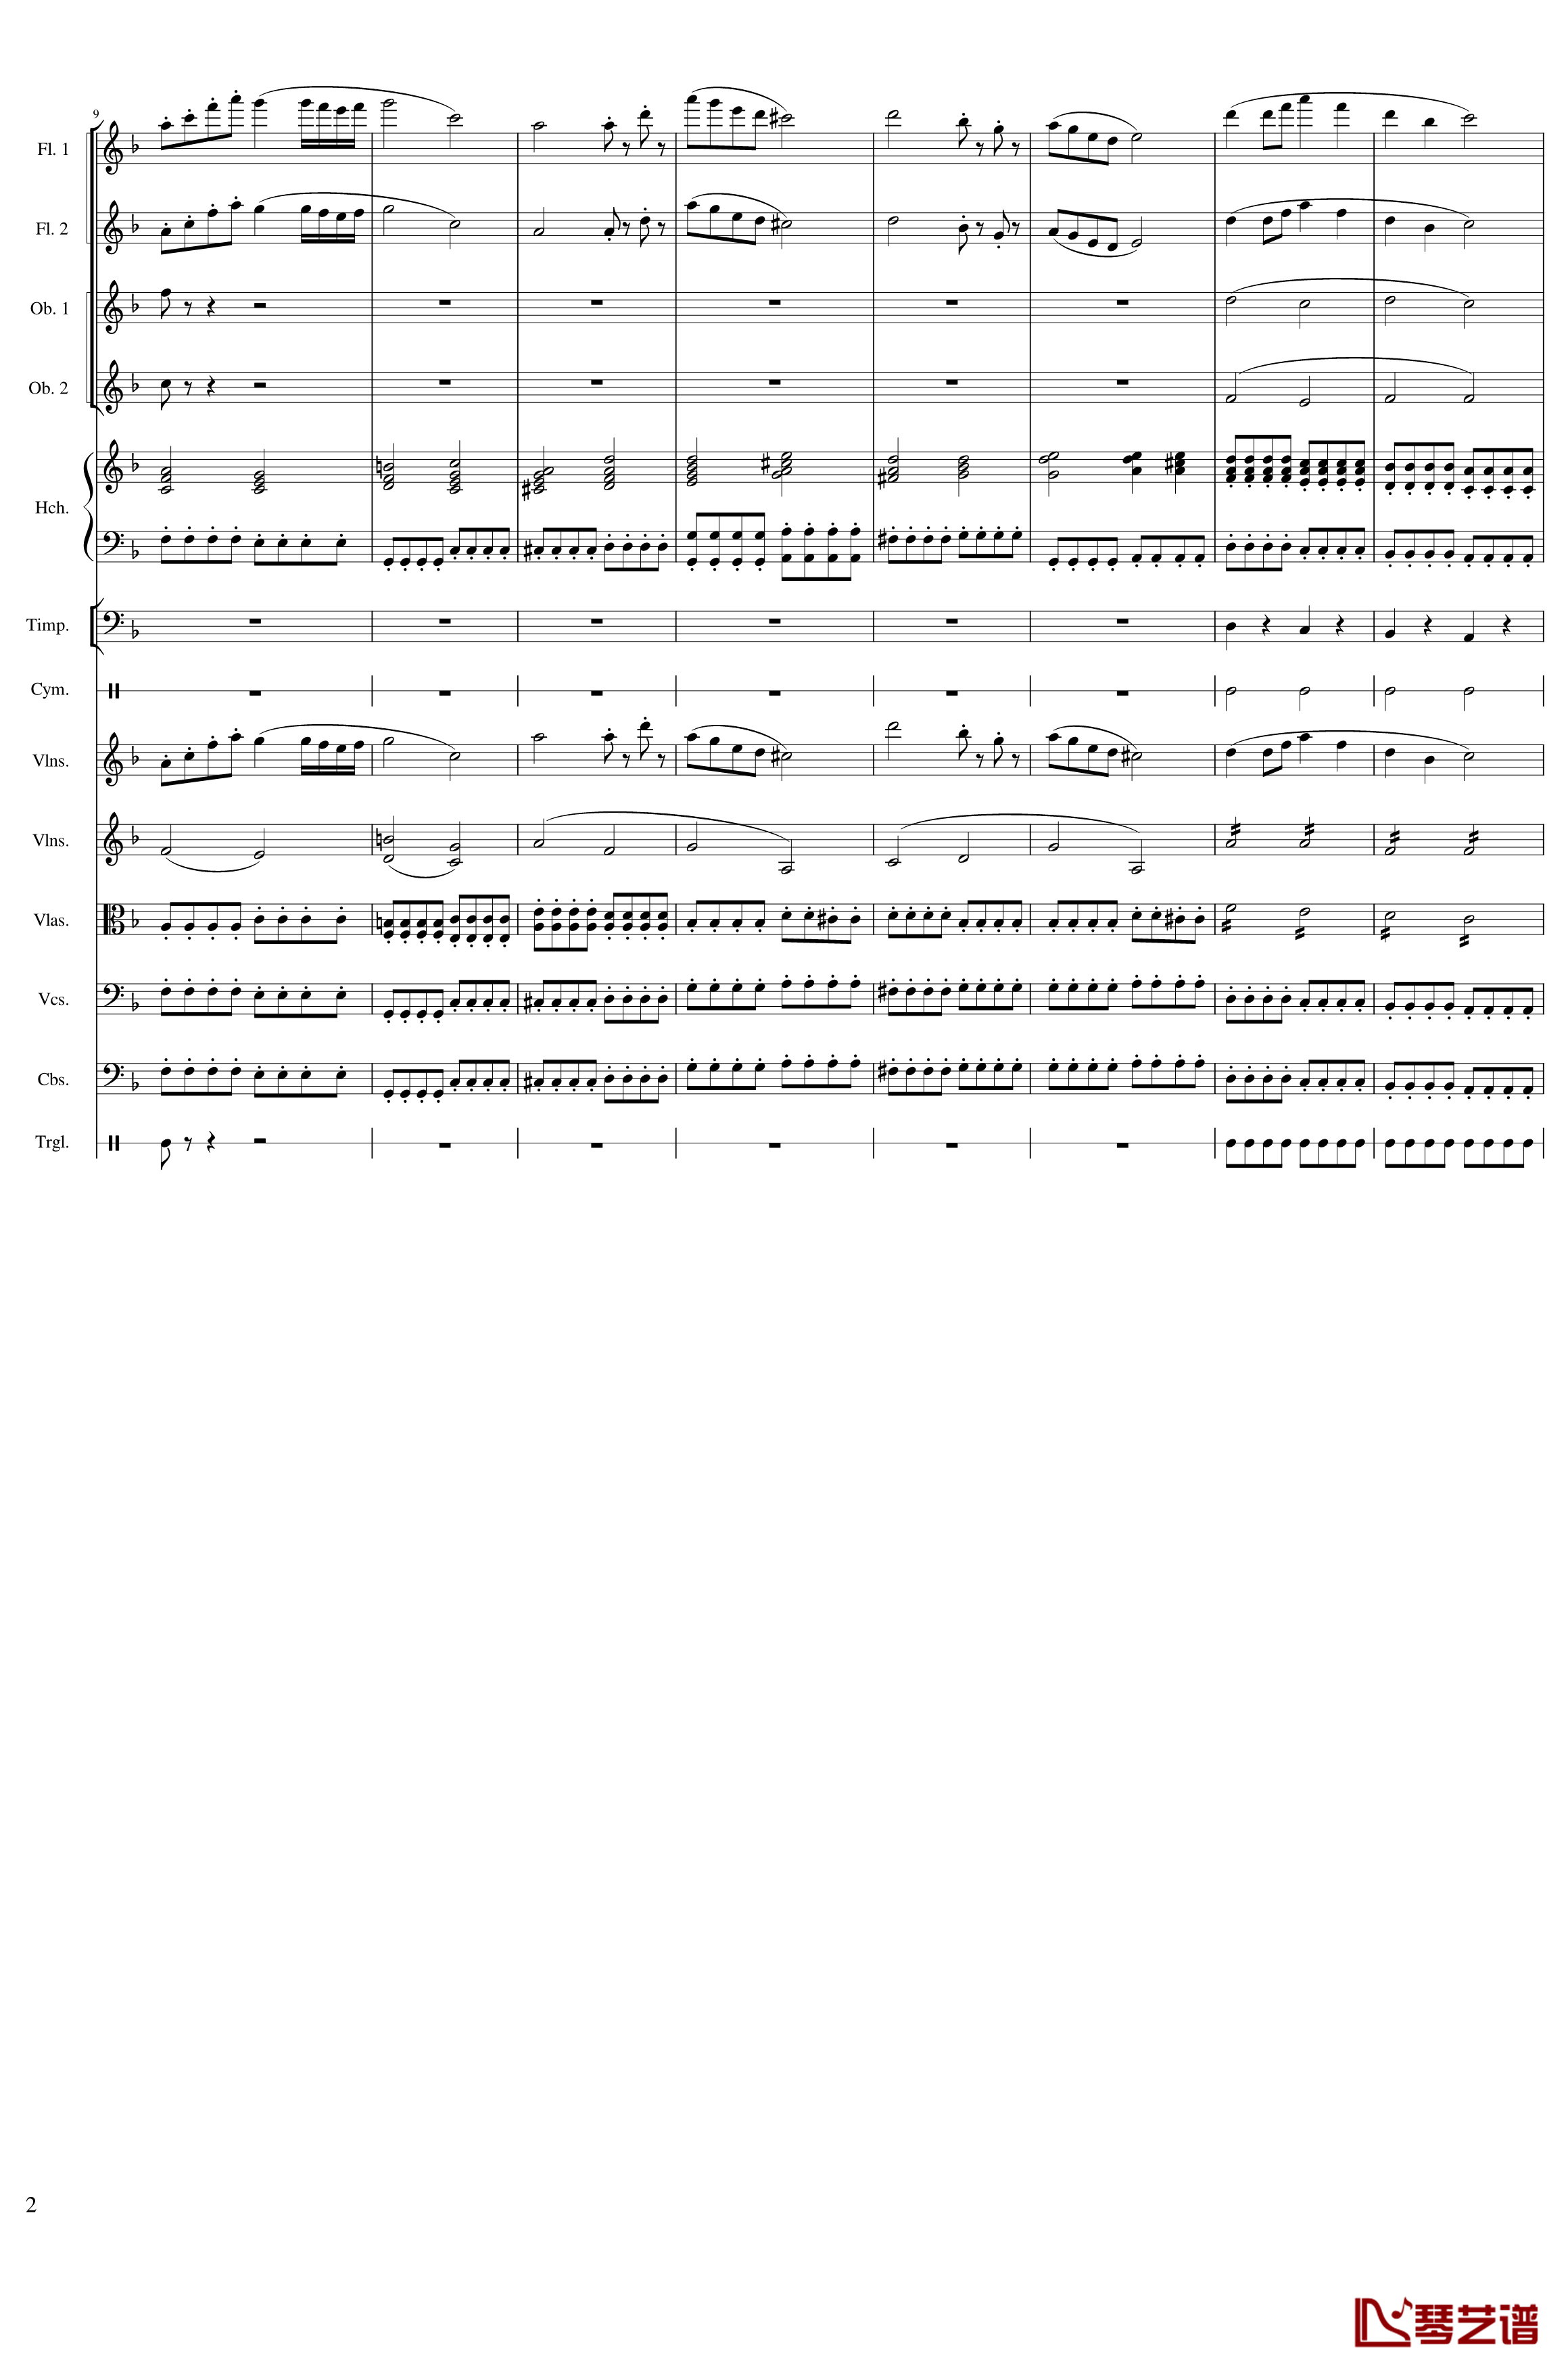 春节序曲钢琴谱-作品121-一个球2